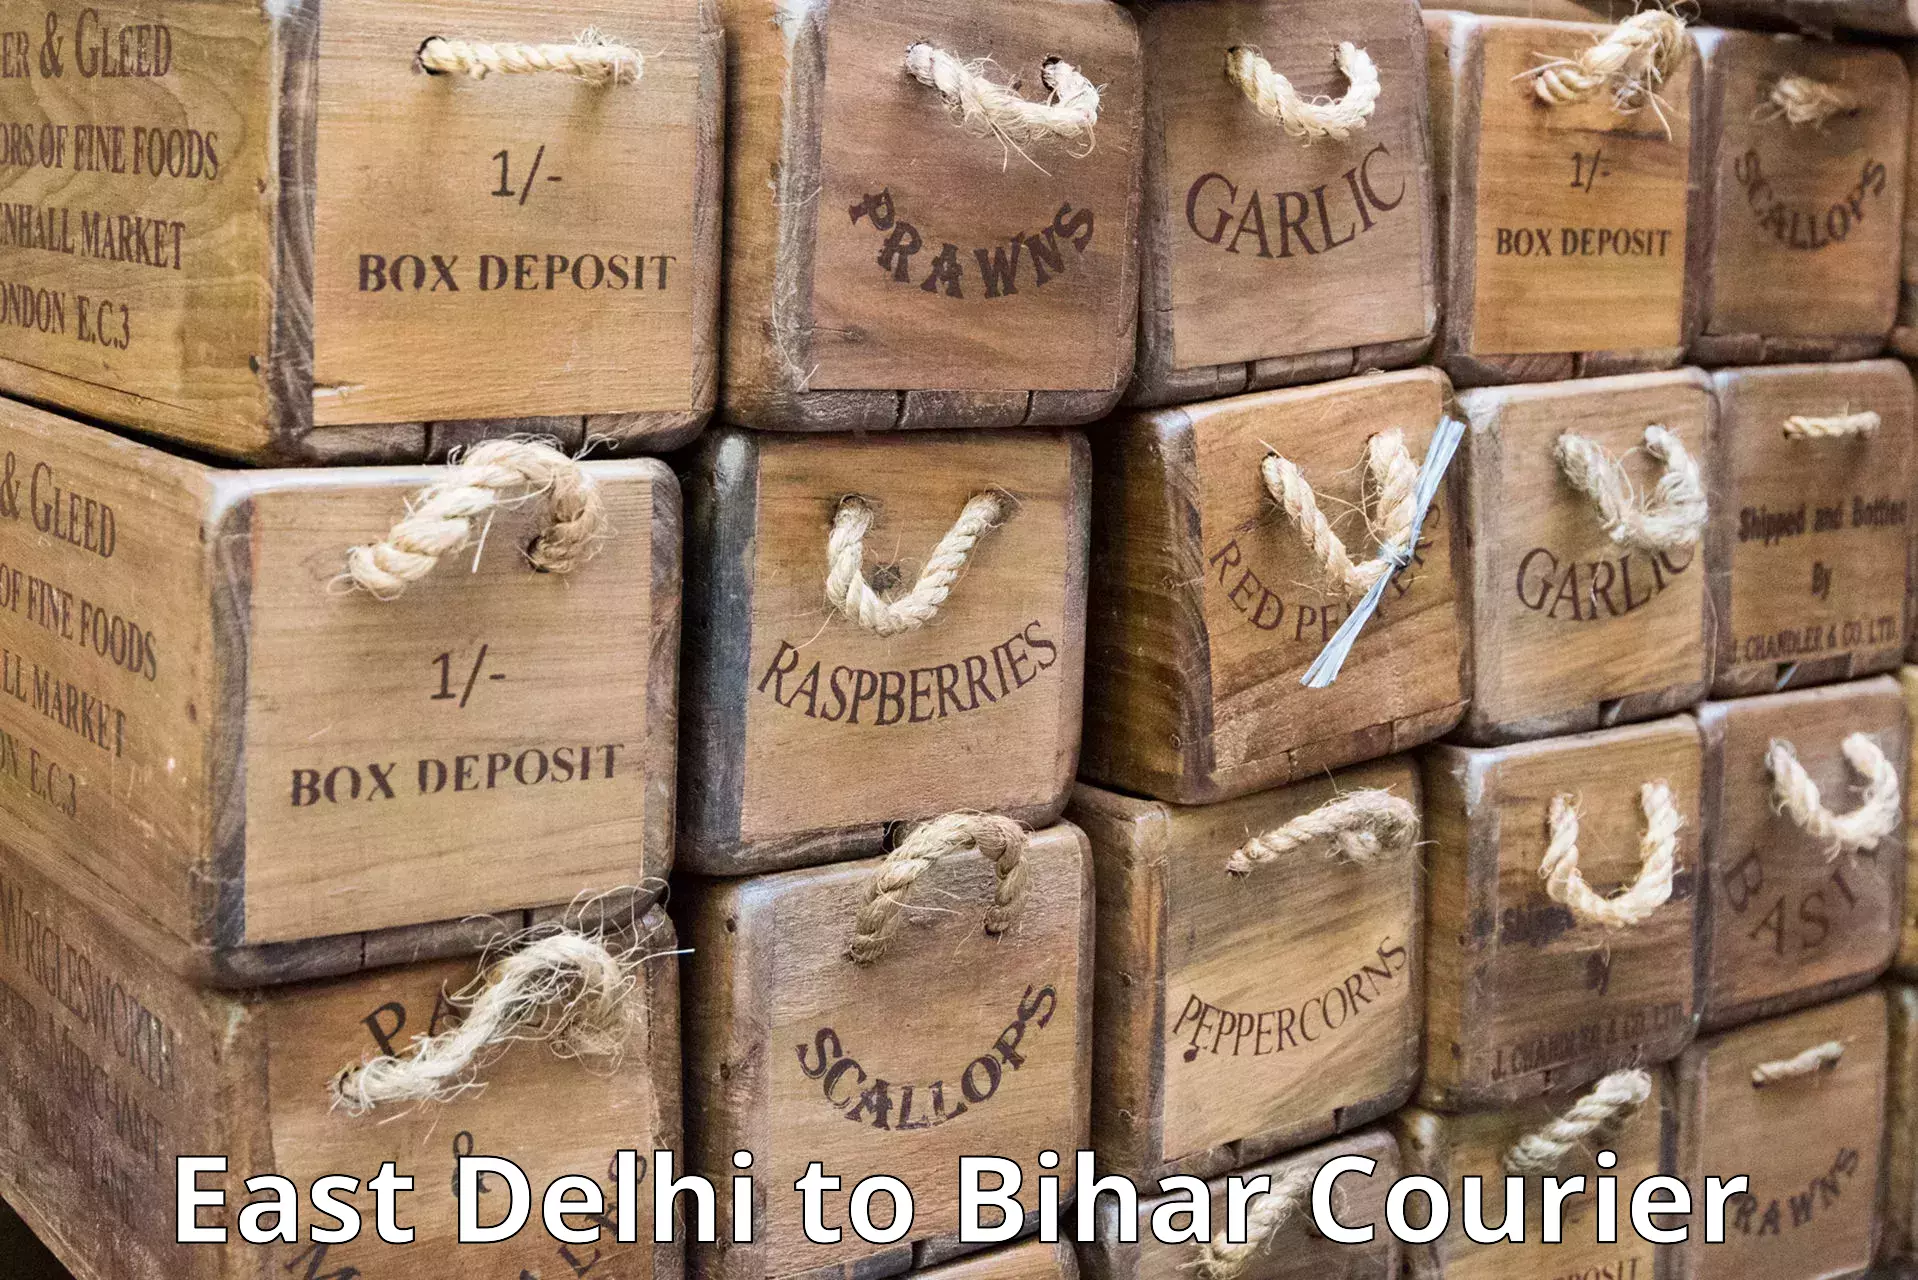 Fast parcel dispatch East Delhi to Minapur